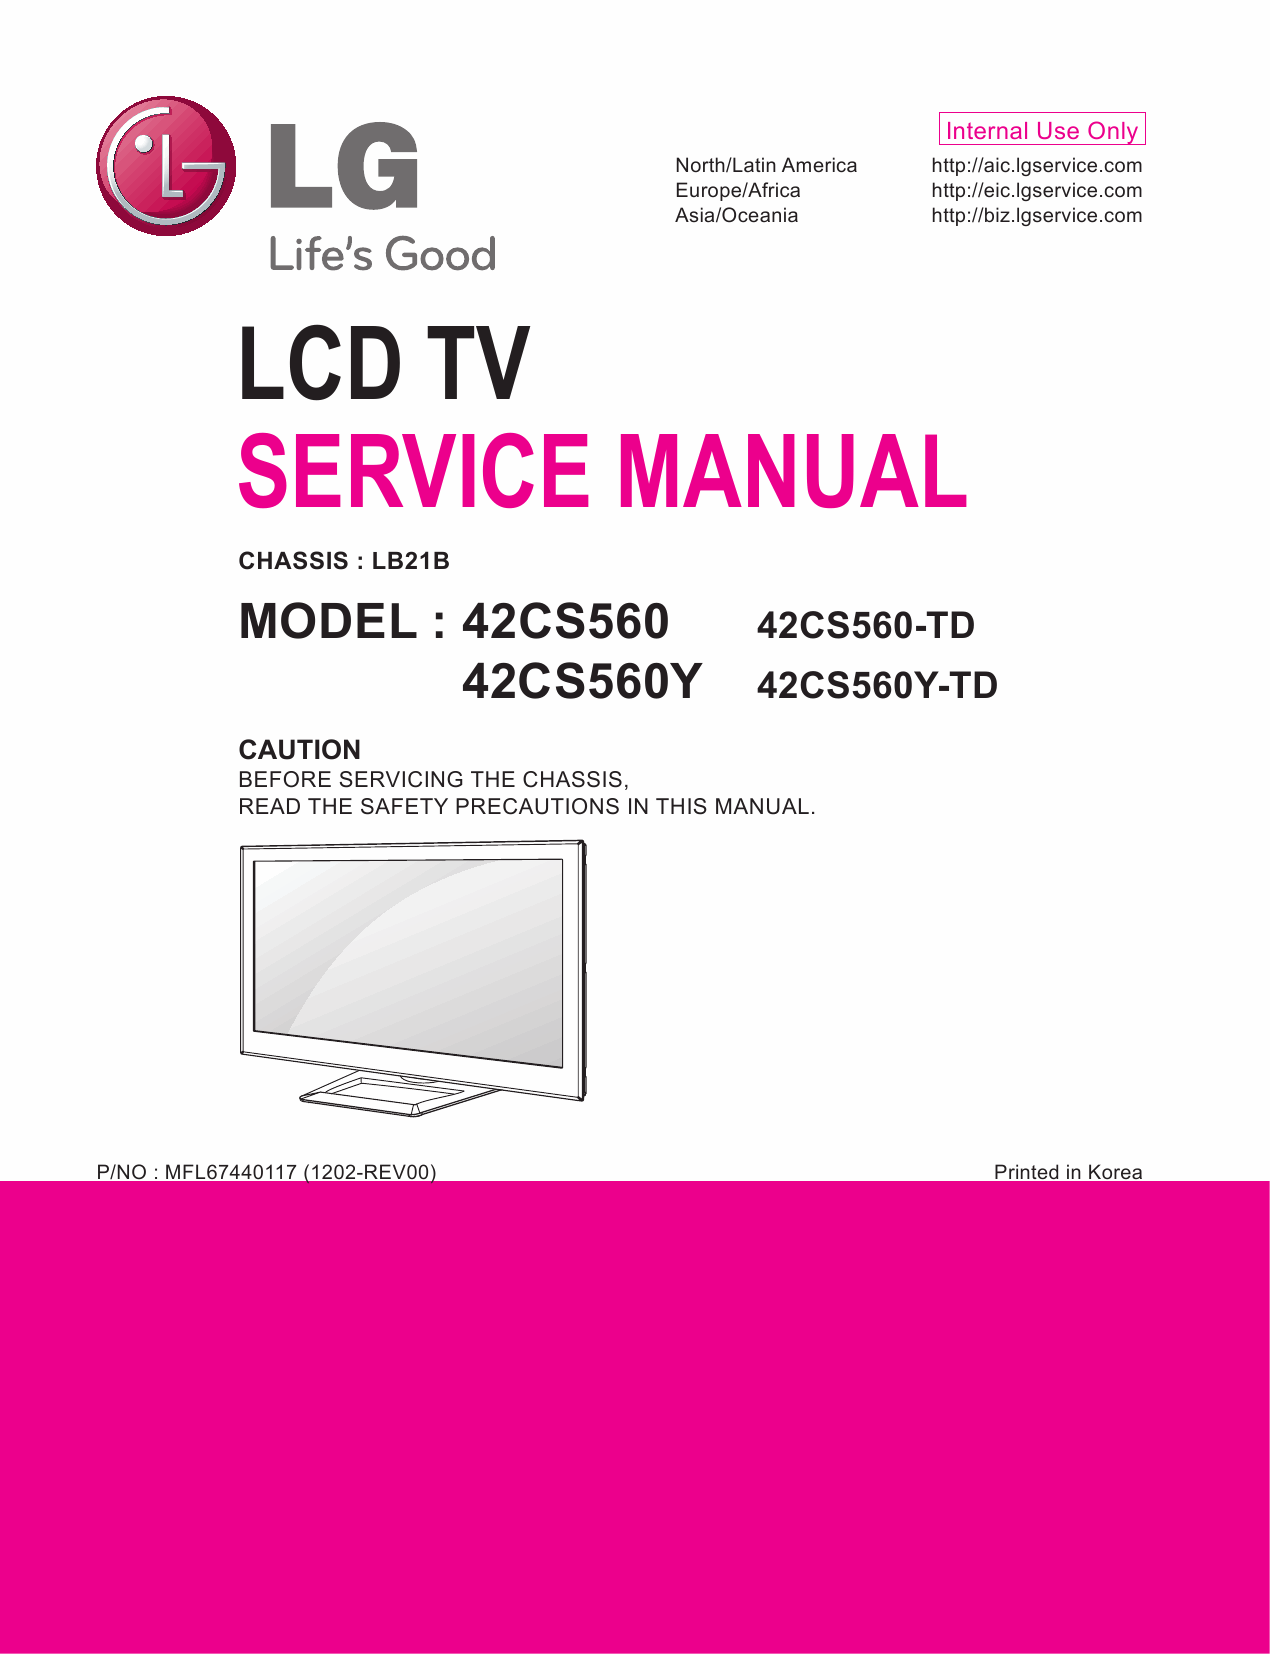 LG_LCD_TV_42CS560_560Y_Service_Manual_2012_Qmanual.com-1